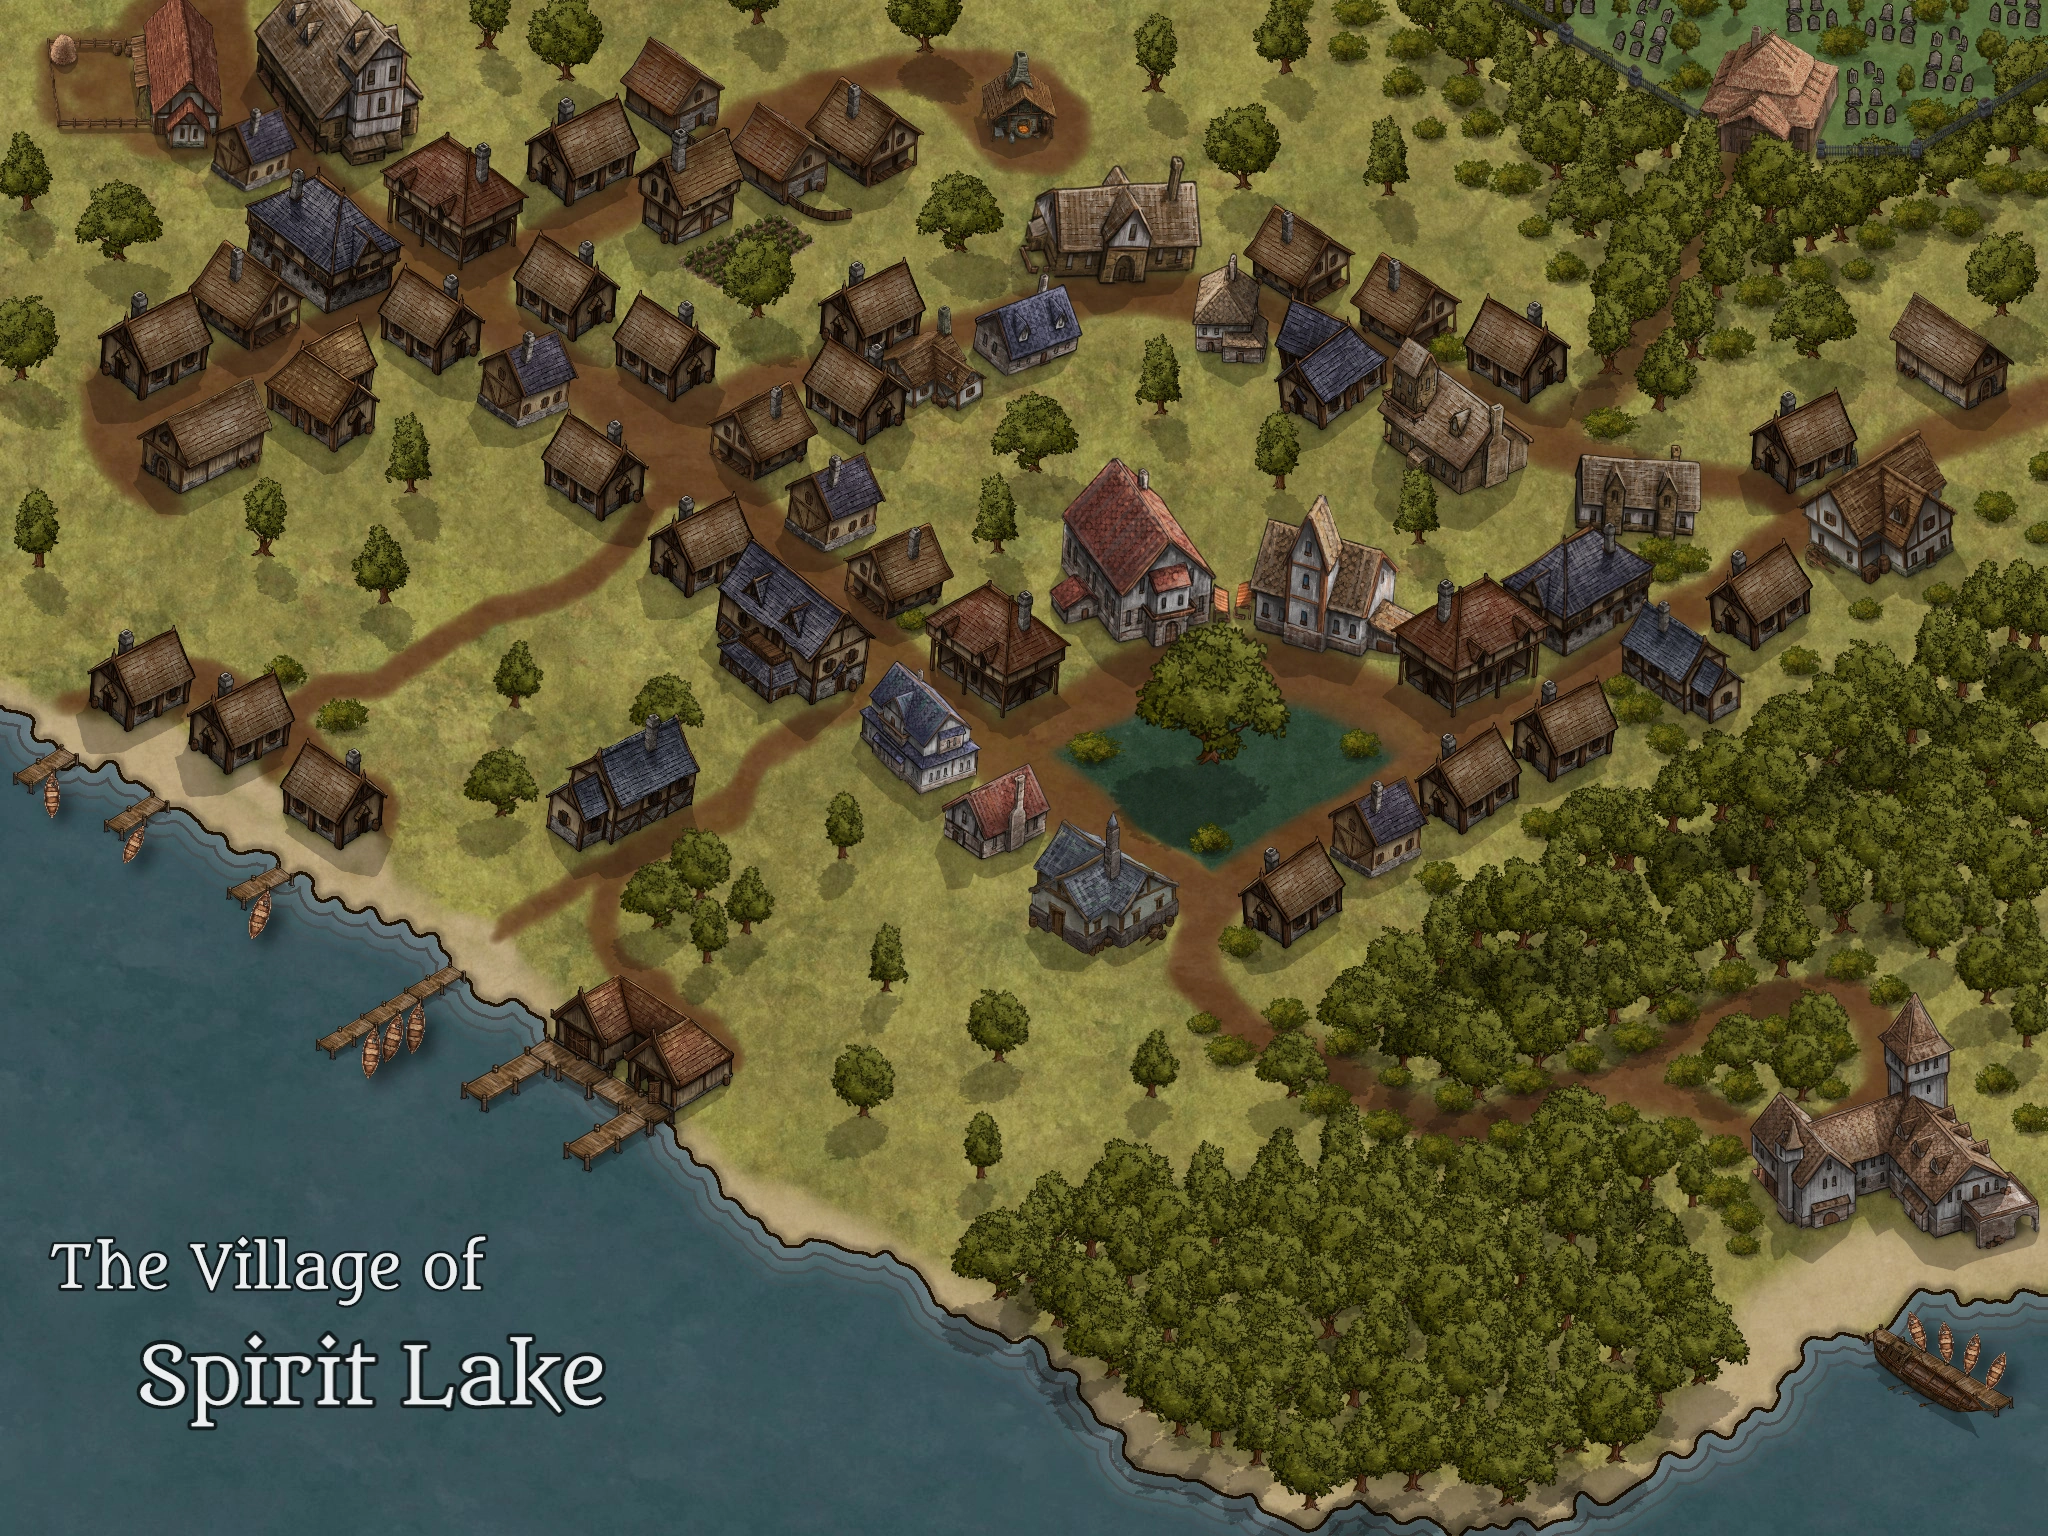 The Village of Spirit Lake Base Map Image